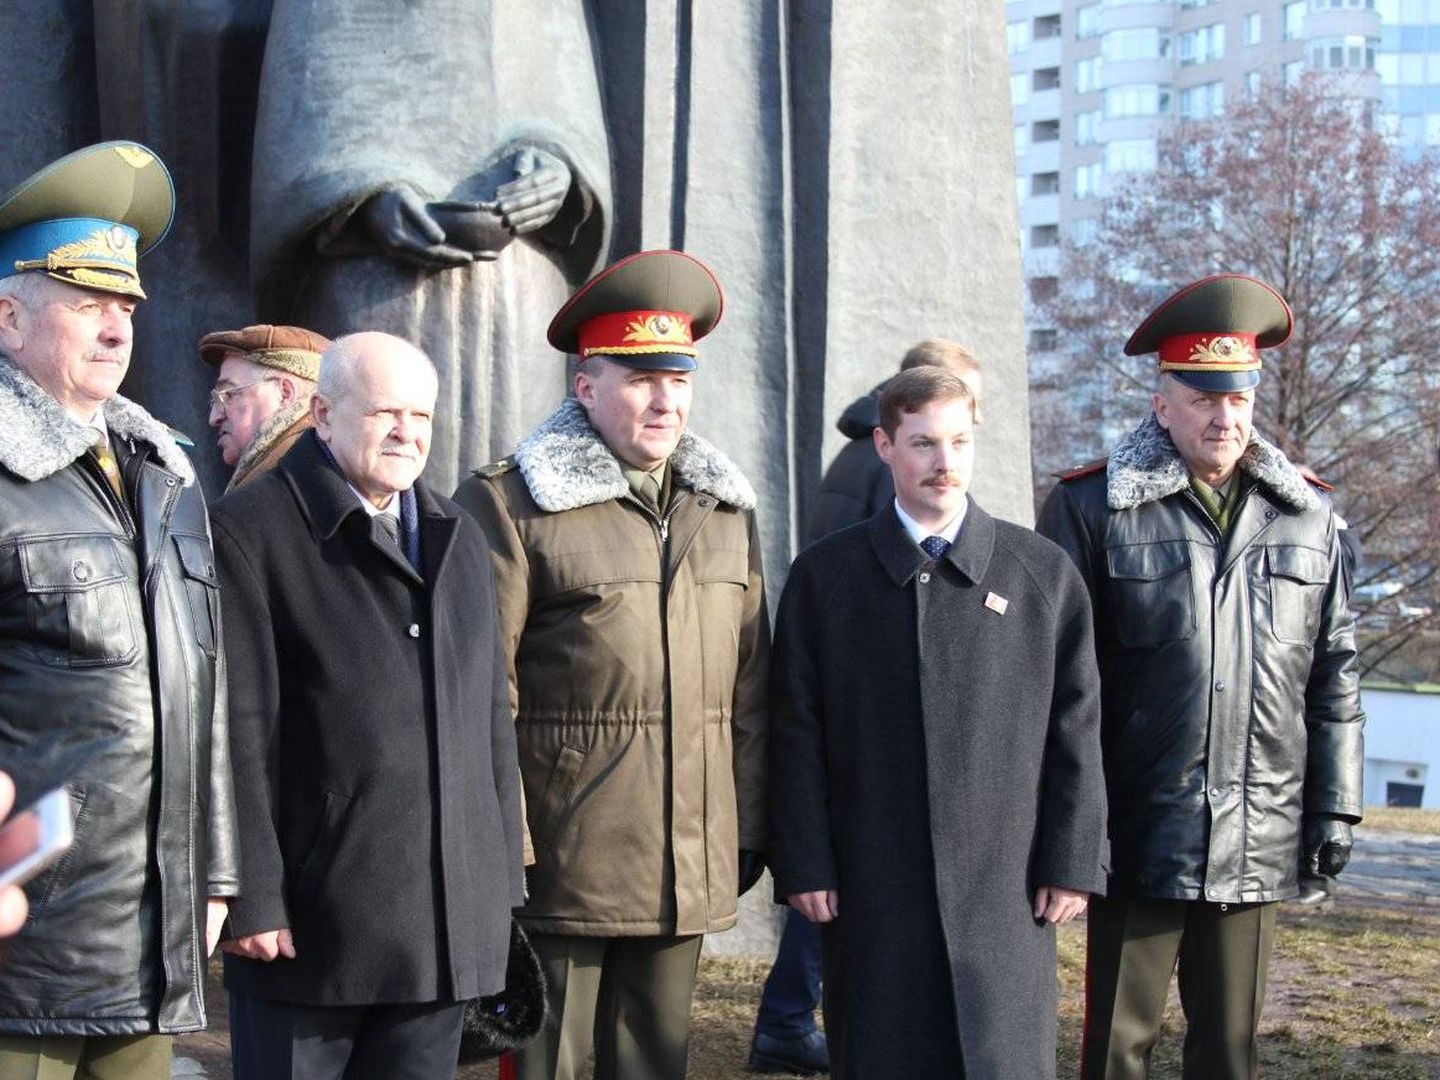 Albert Santin posa con cuadros del régimen bielorruso en Minsk.